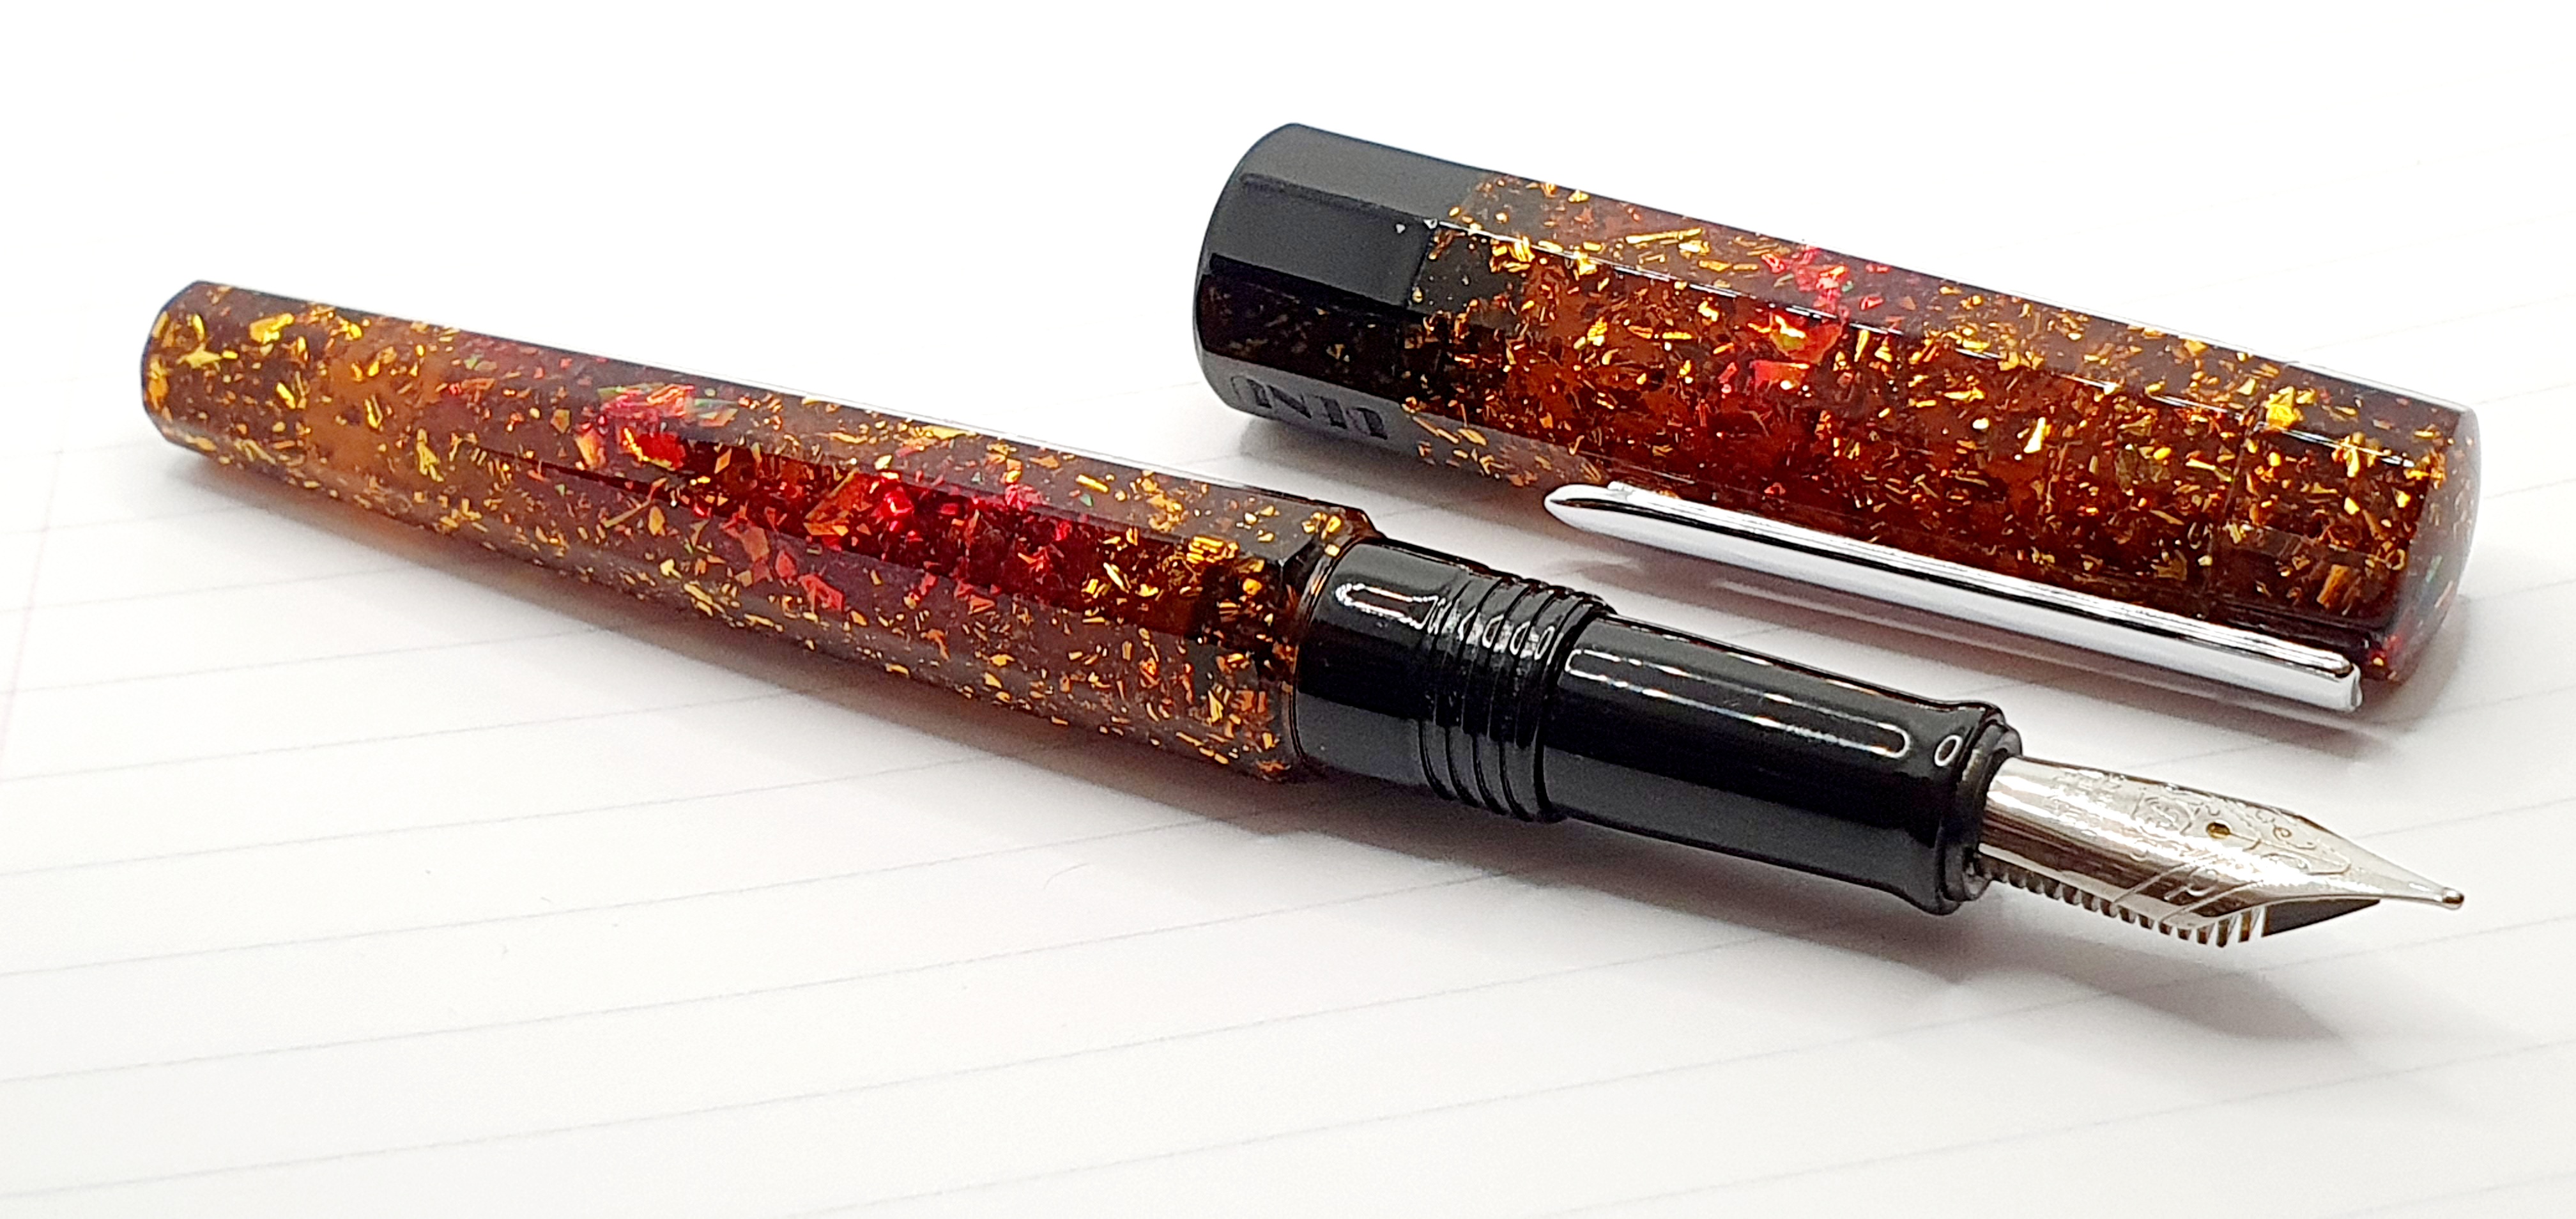 The Benu Euphoria Bourbon fountain pen: early thoughts 7th